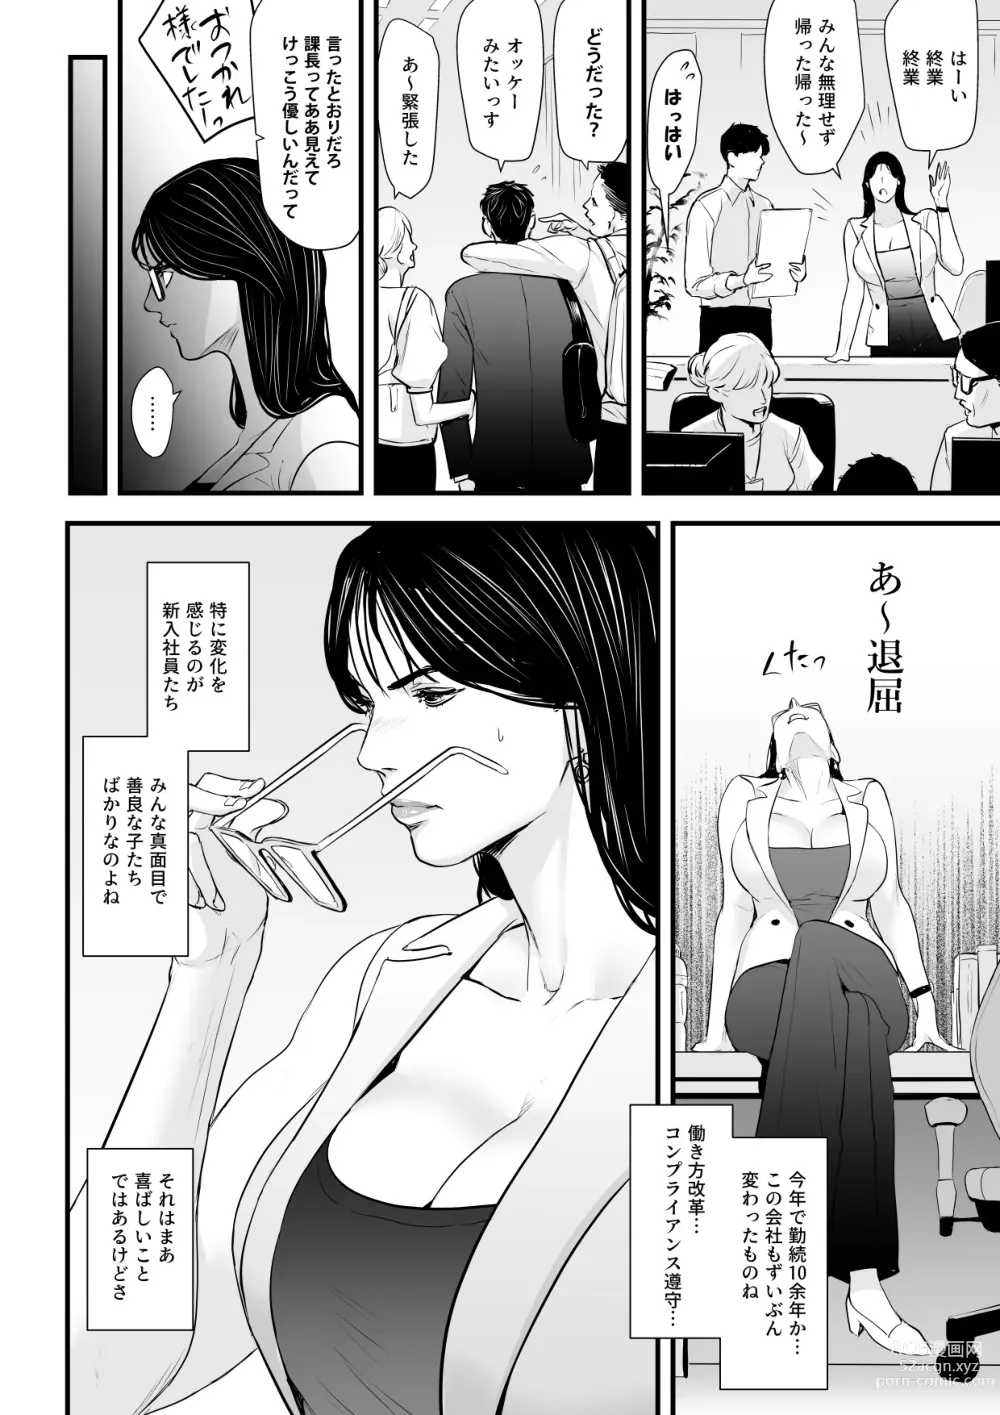 Page 5 of doujinshi Erito onnakachouwa kukkbokusaseraretai